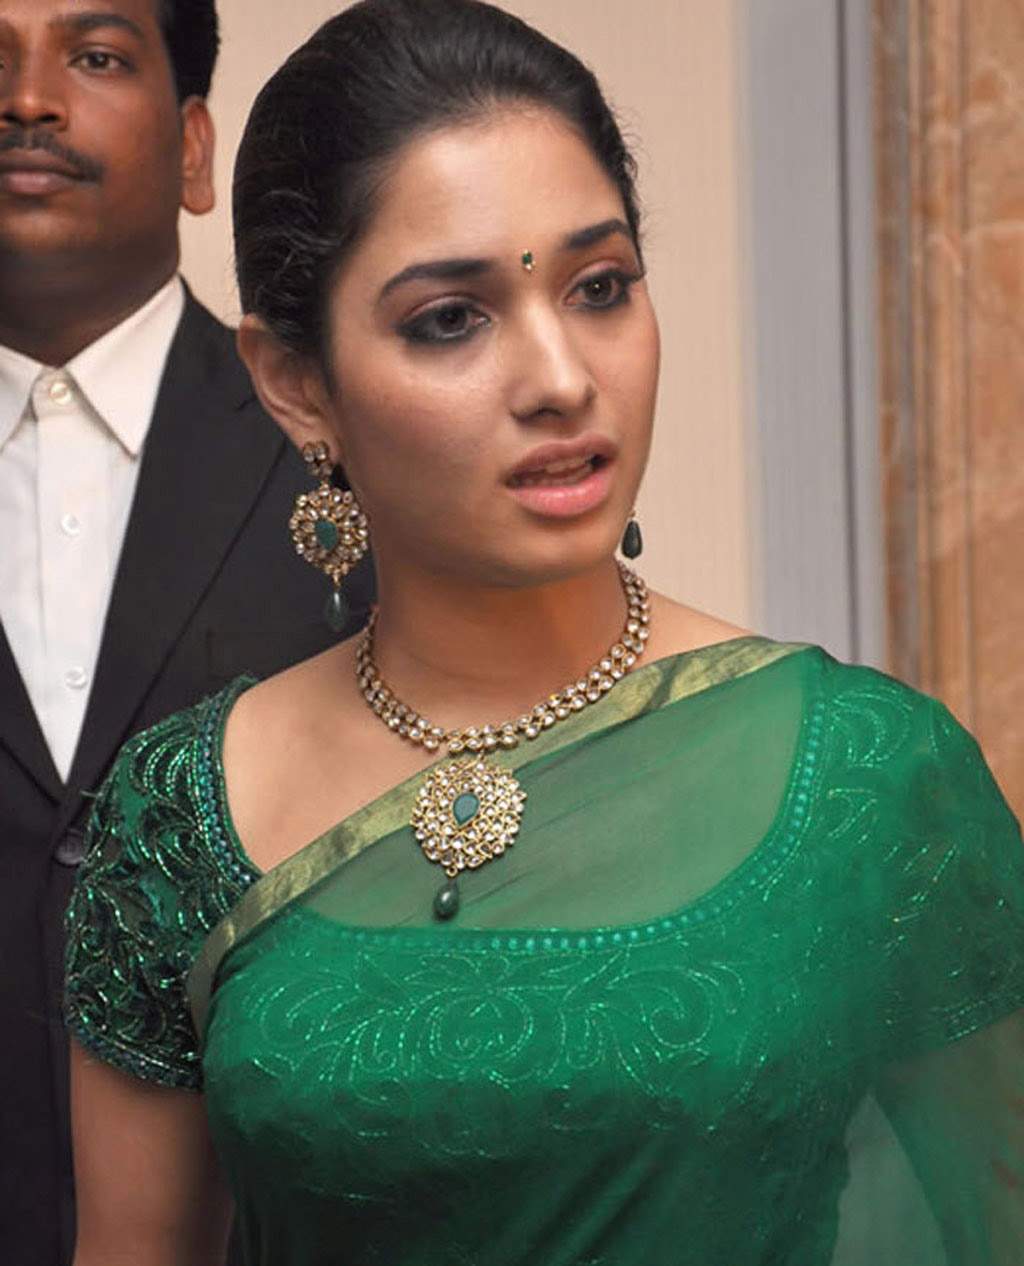 Tamil Actress In Saree - Pic - Tamil Actress In Saree - Hot Pics